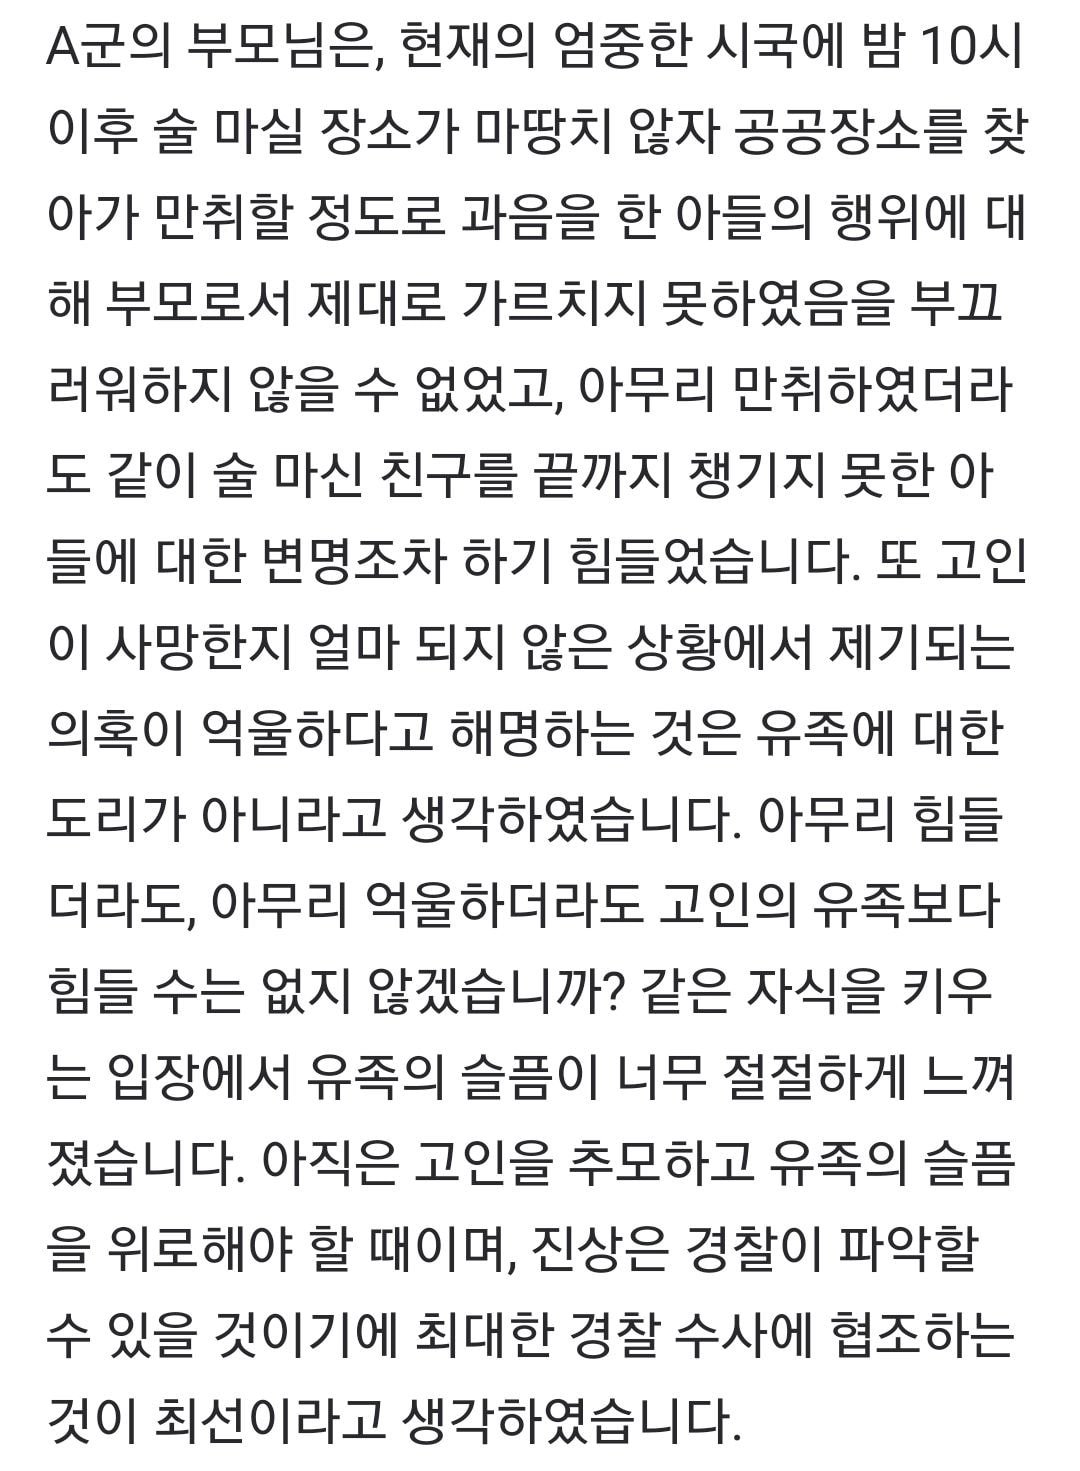 [전문]故손정민 친구측 의혹 해명 입장문